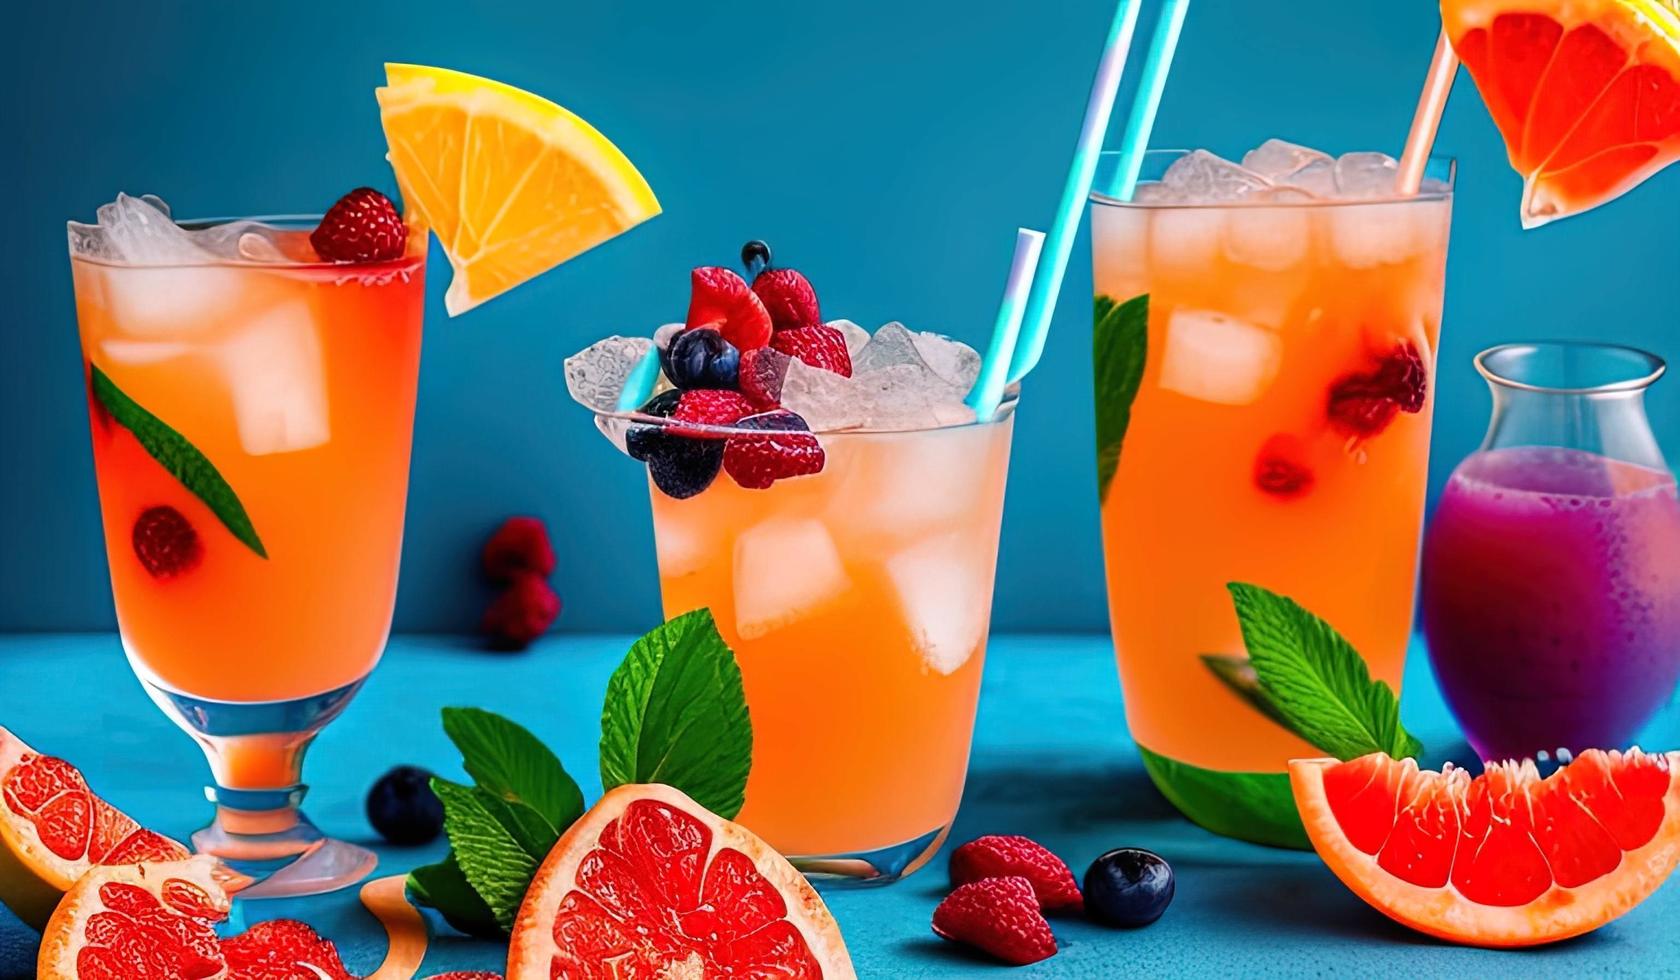 fotografía profesional de alimentos primer plano de cóctel de verano de frutas tropicales con pomelo rojo, bayas y hielo sobre fondo azul foto